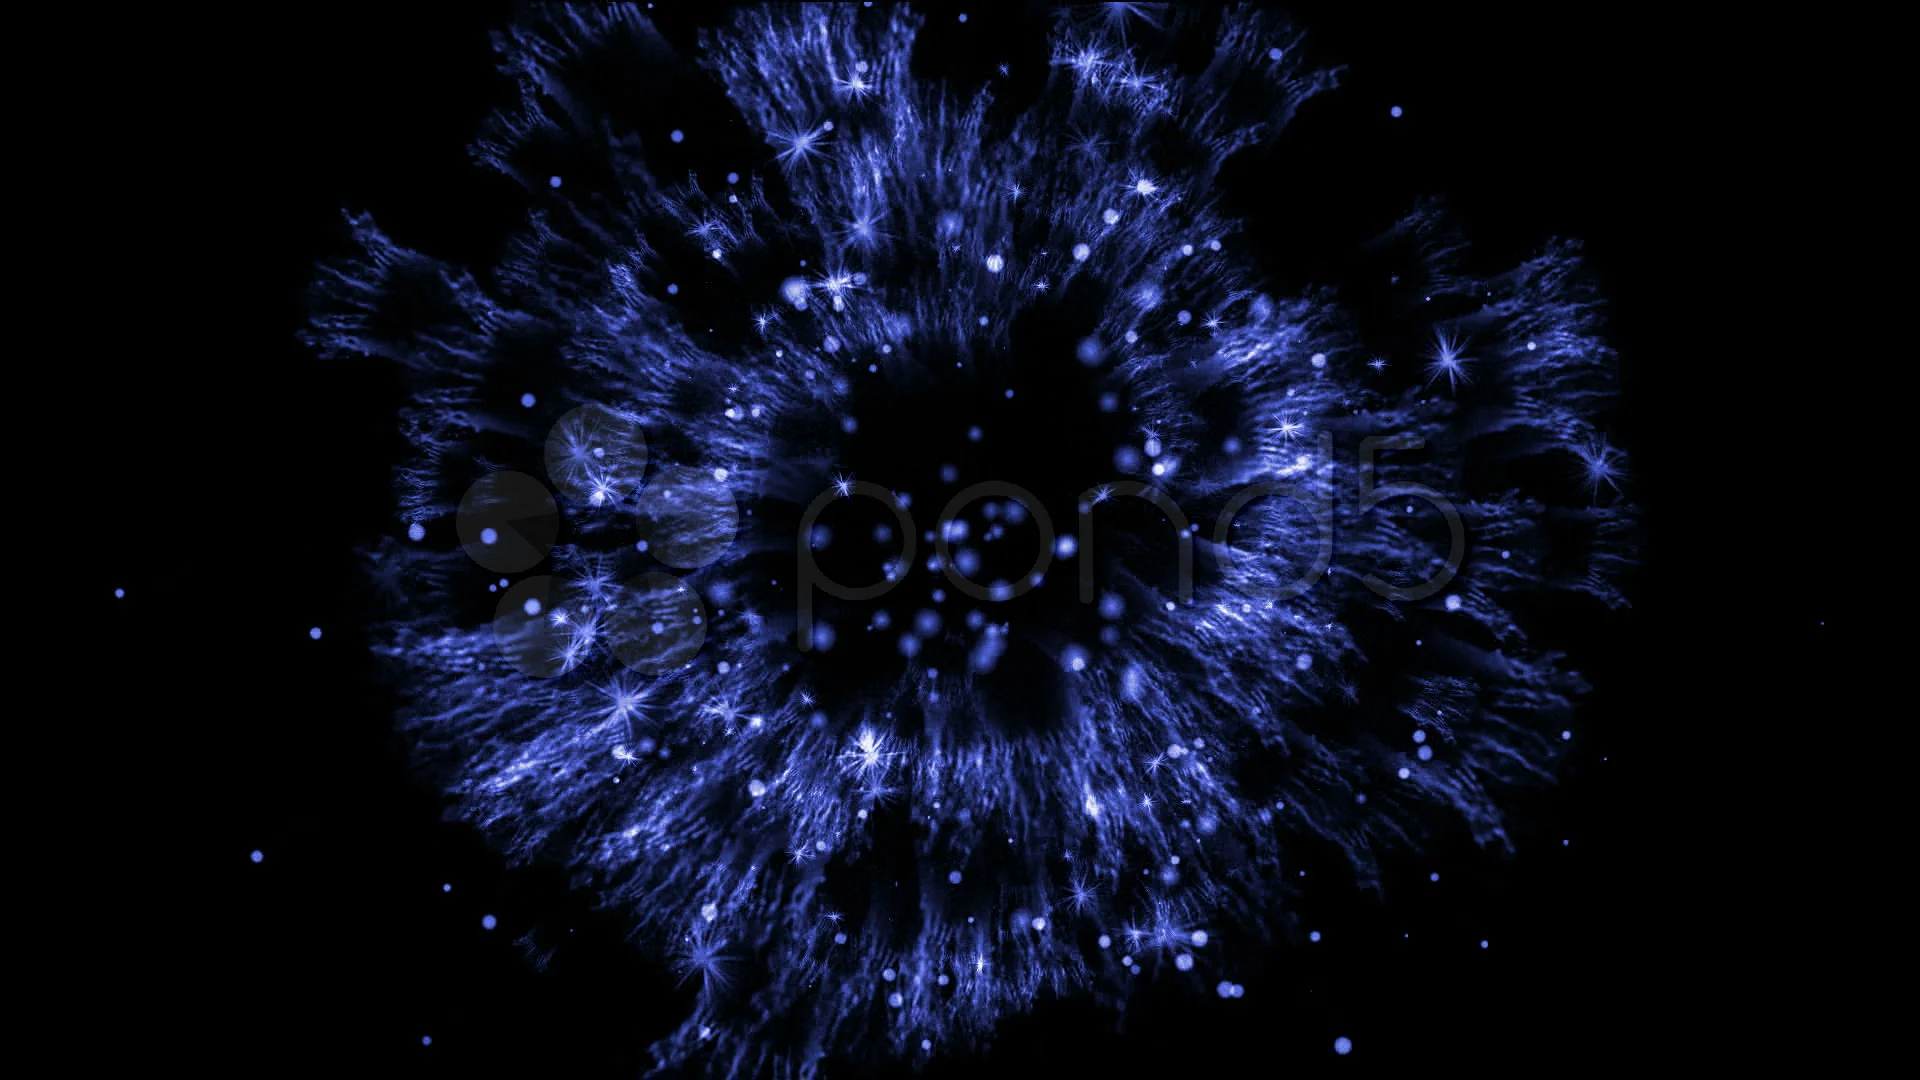 Trop - [Reign of Darkseid] L'annihilation du Kahndaq [LIBRE] - Page 3 Blue-explosion-particle-space-footage-000798309_prevstill